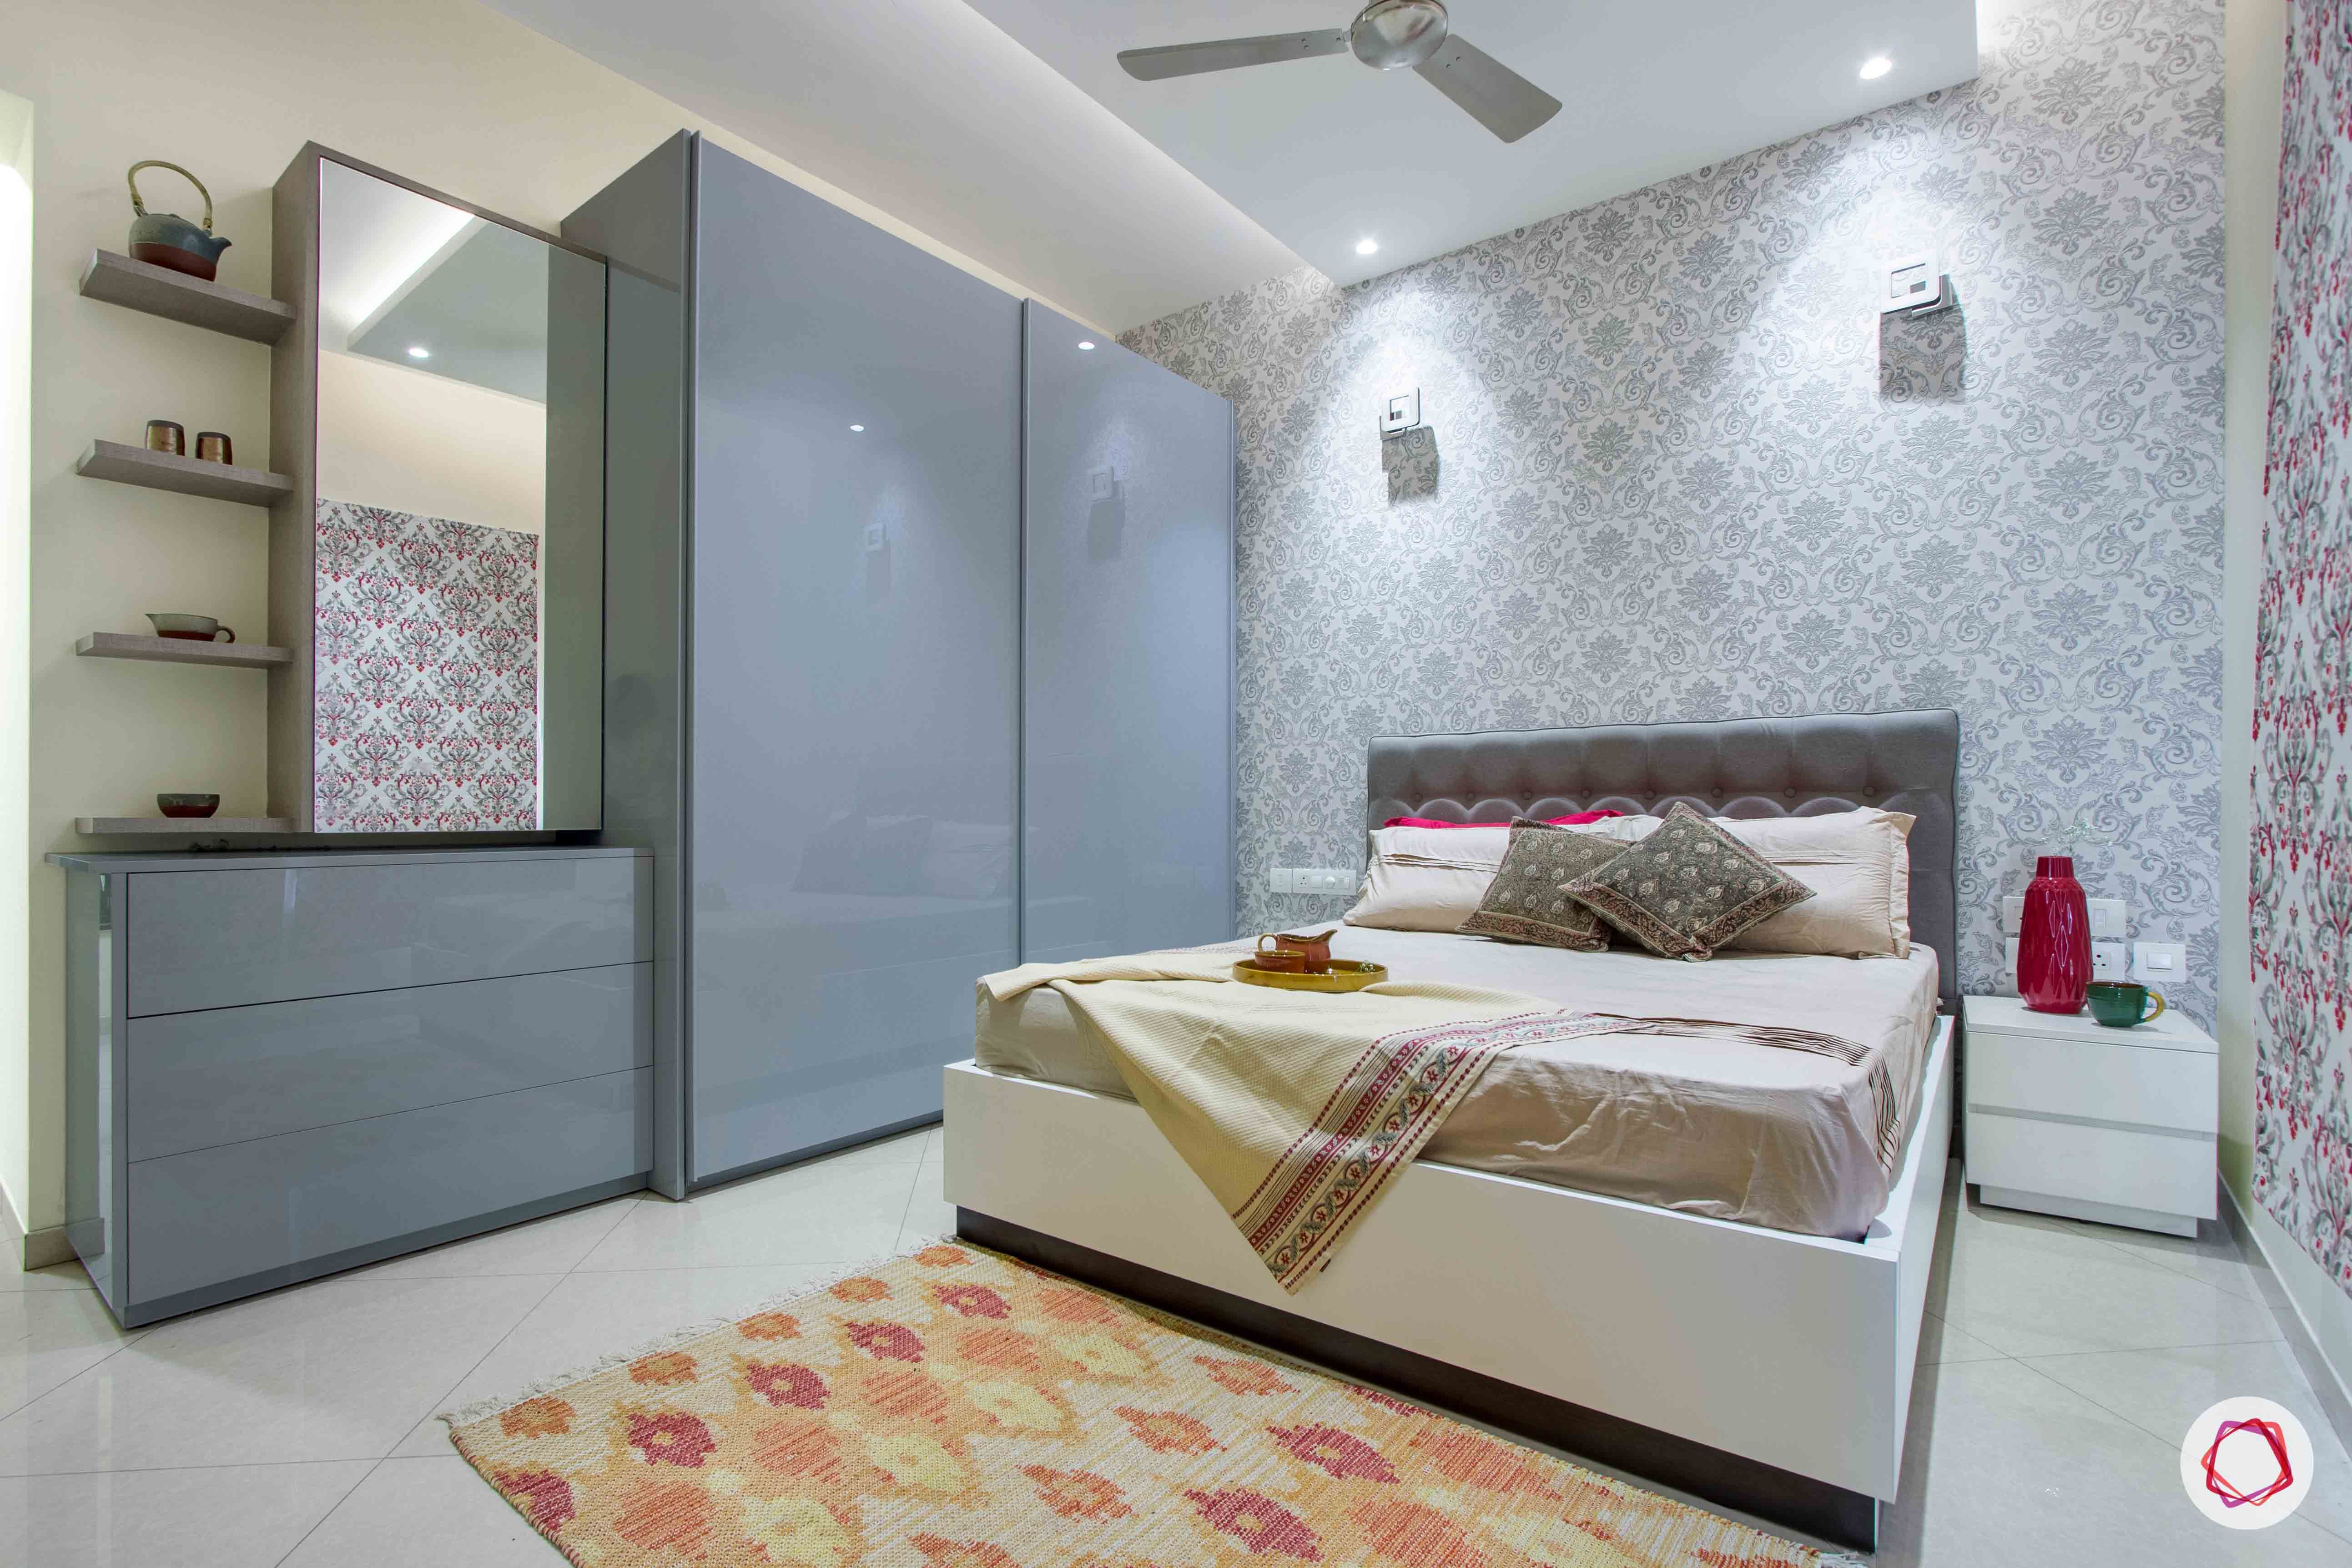 bedroom-printed-wallpaper-rug-wardrobe